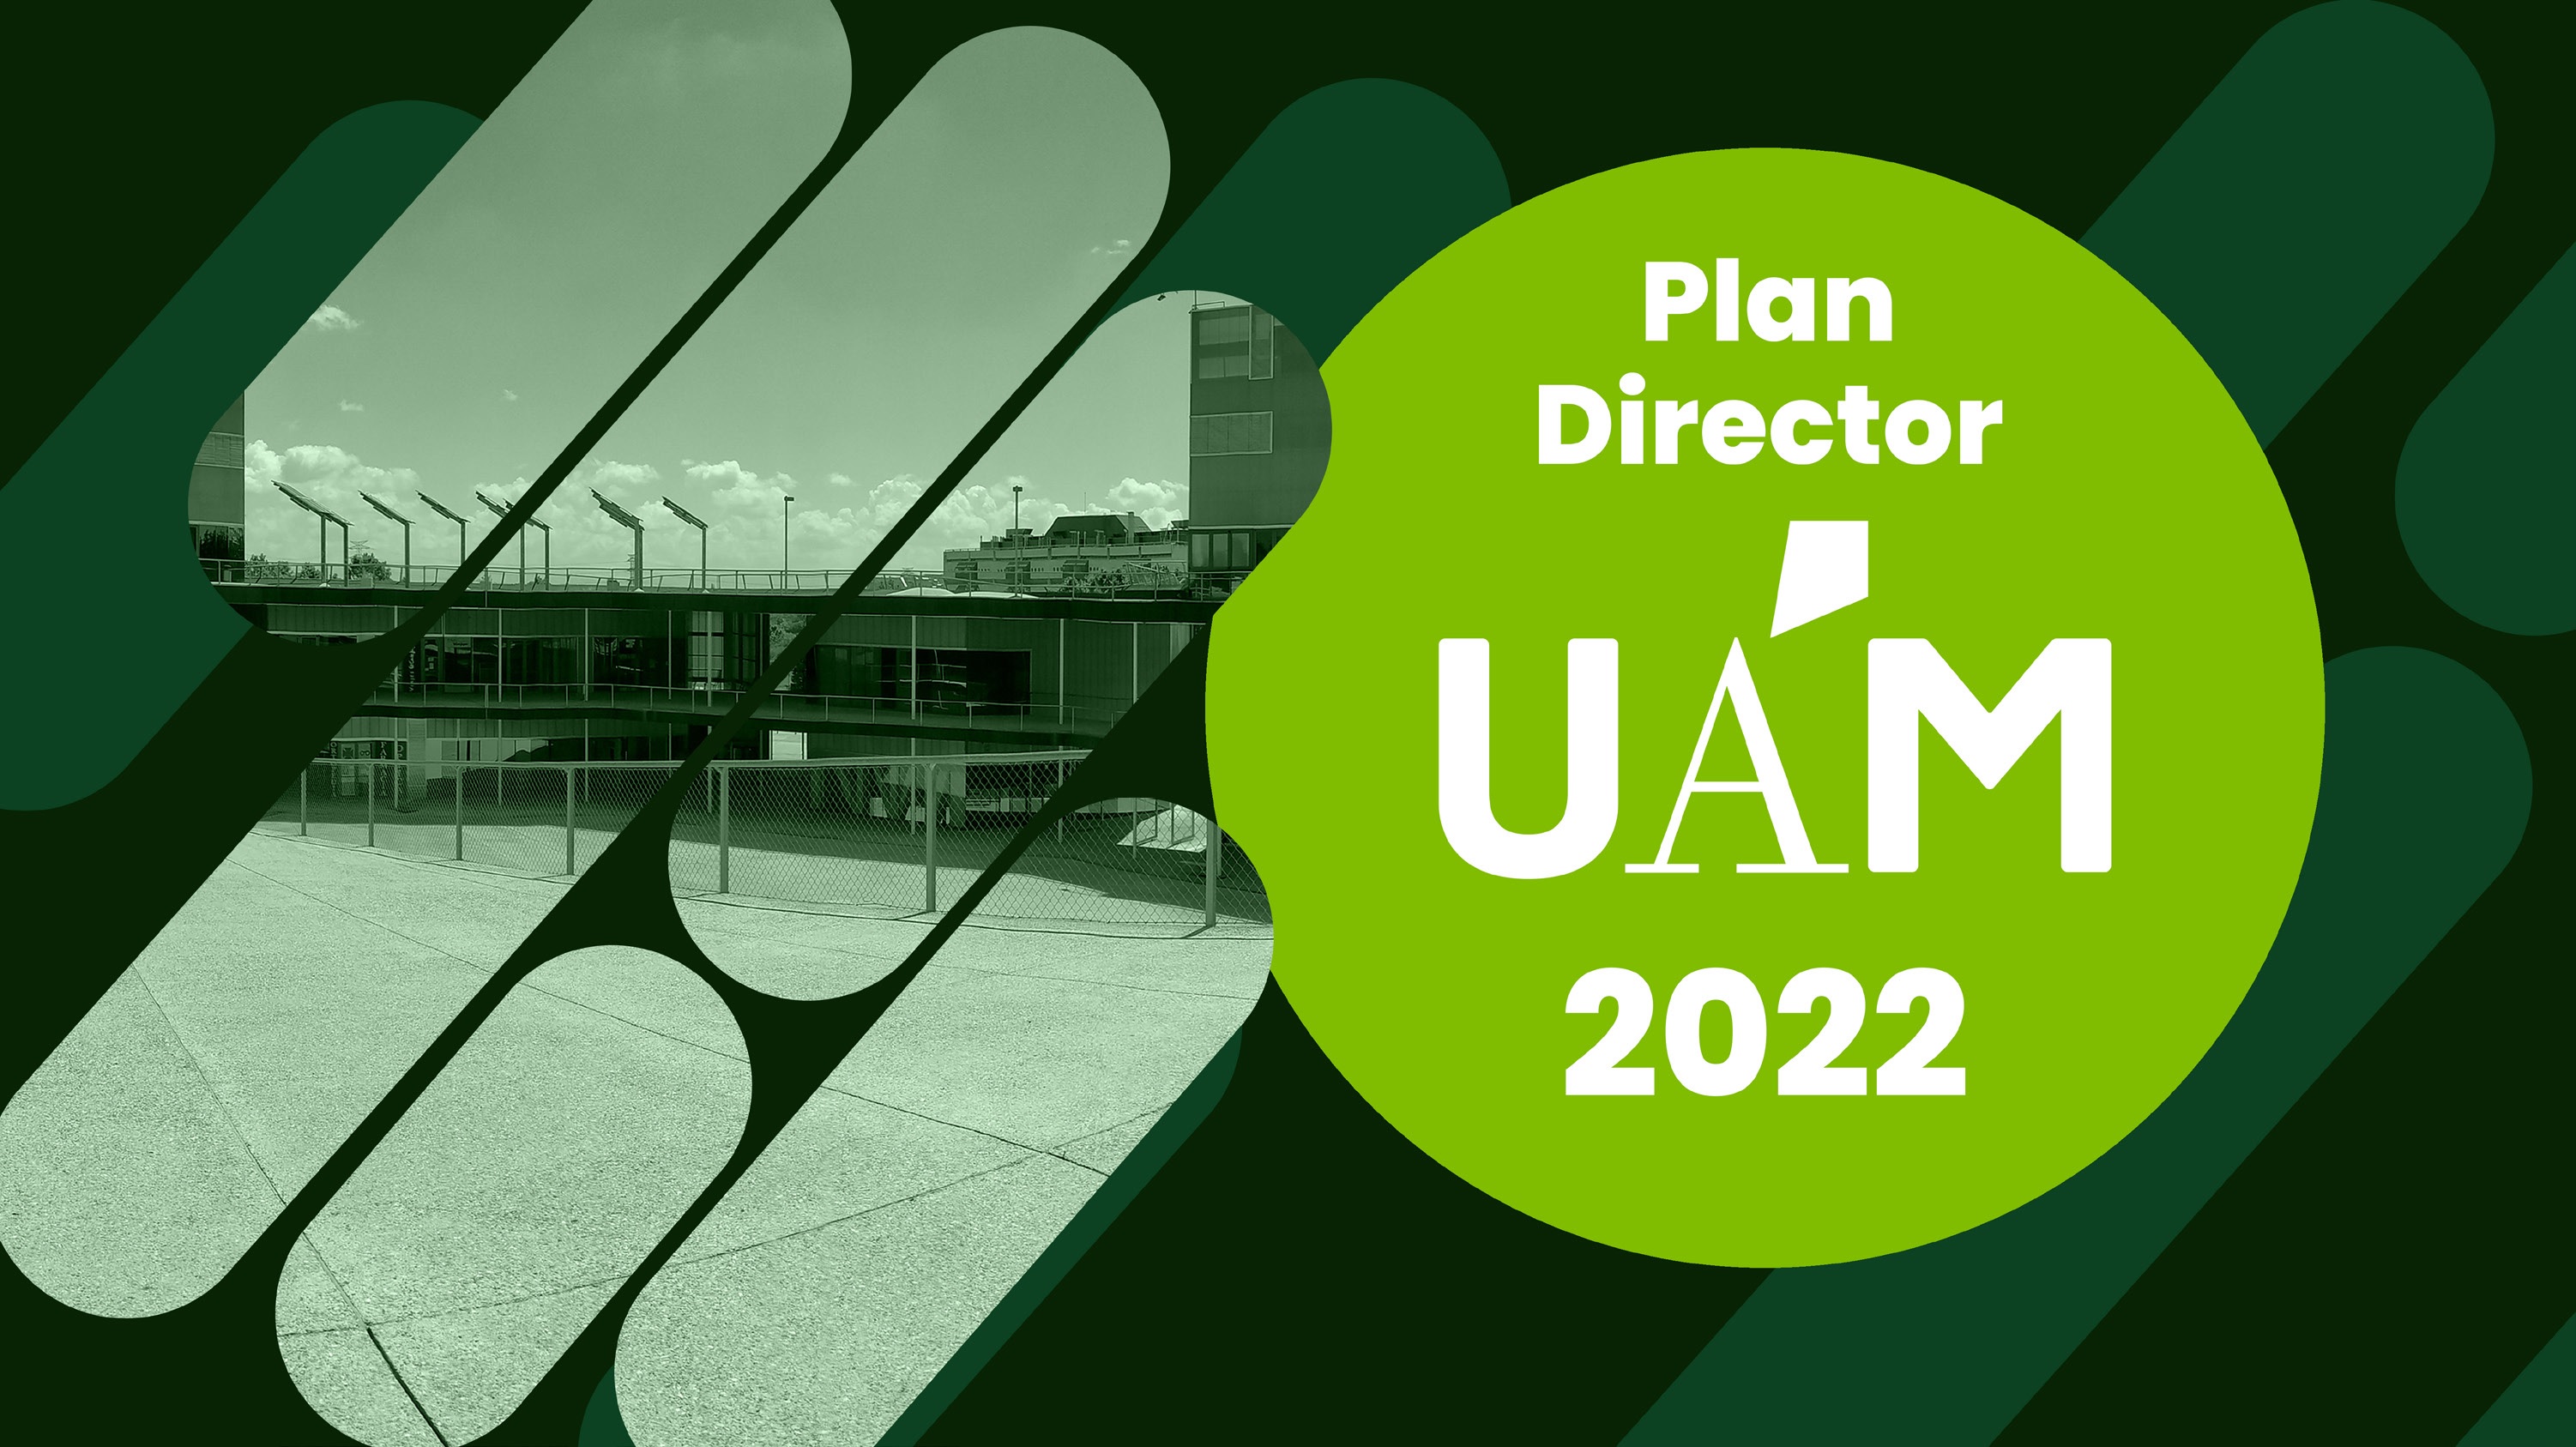 Imagen del Edificio Plaza Mayor, con título Plan Director UAM 2022